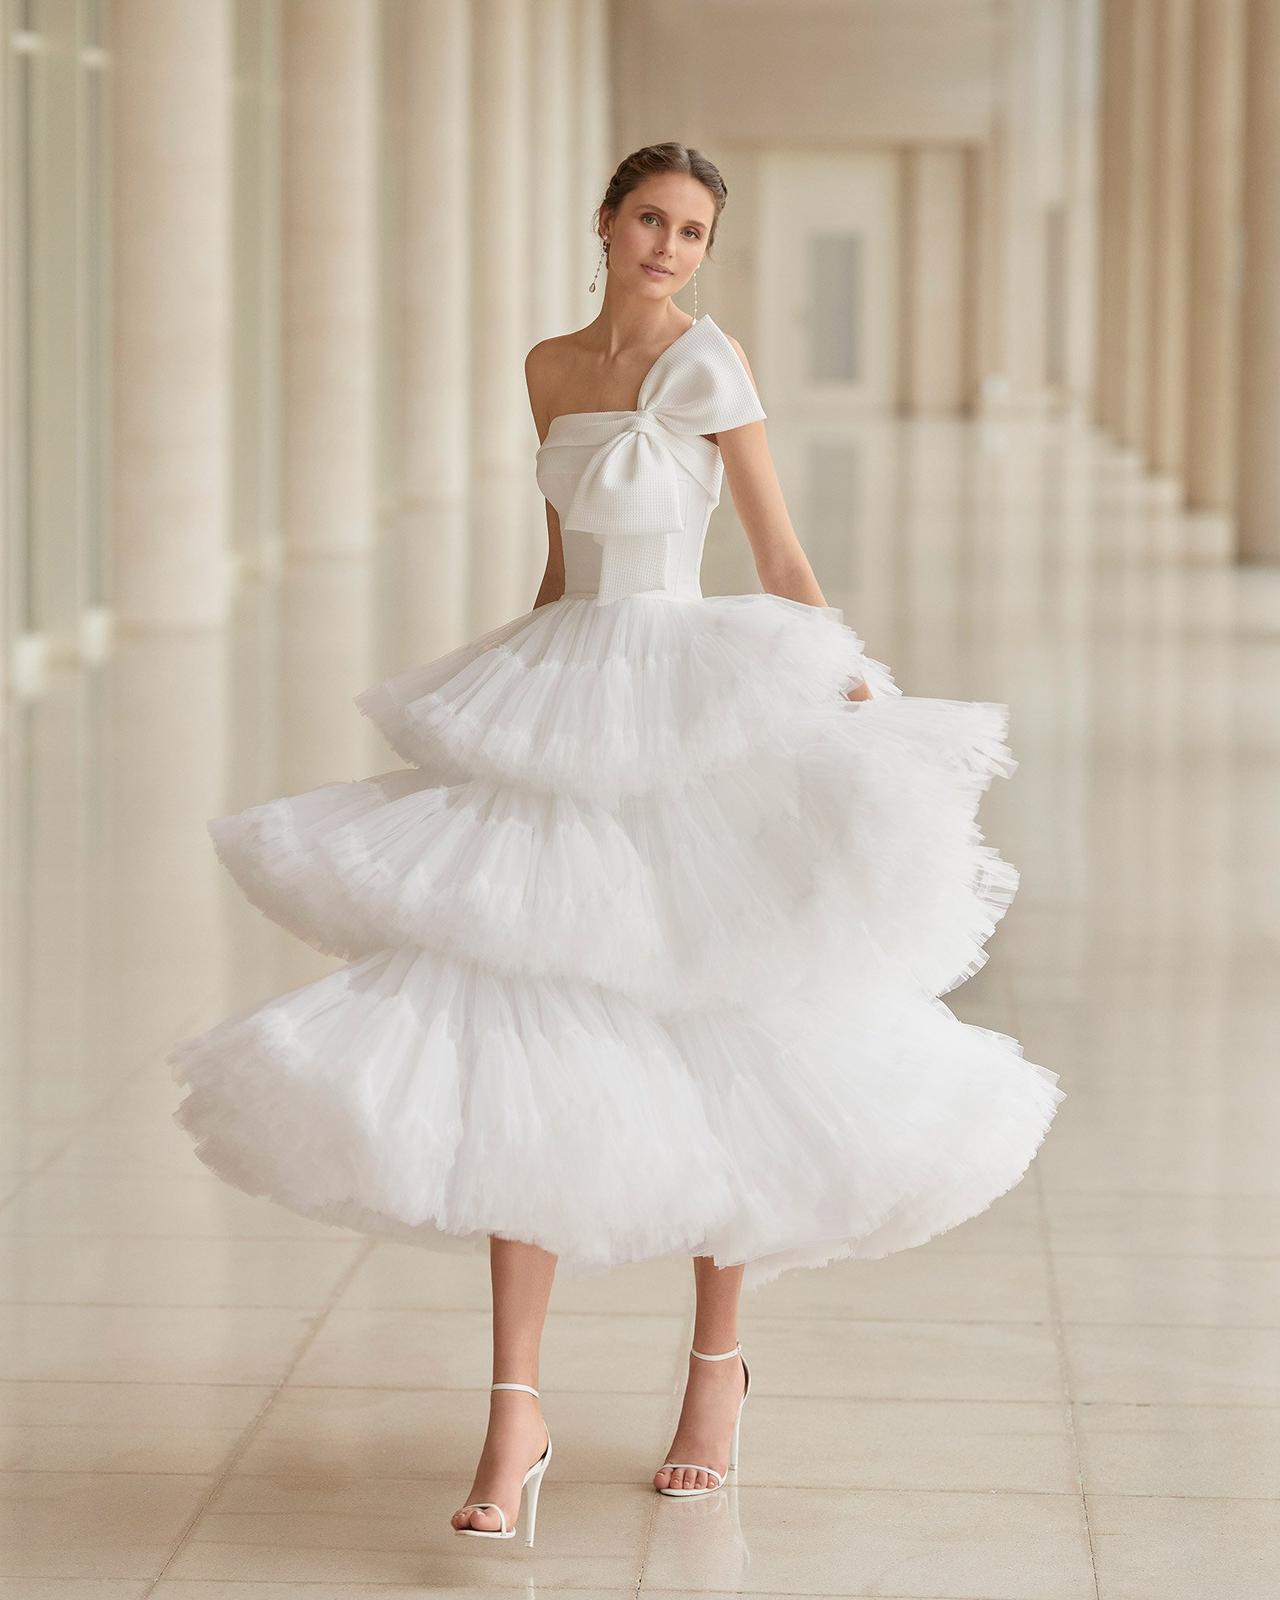 Estos los 50 vestidos con moños para no te puedes perder - bodas.com.mx